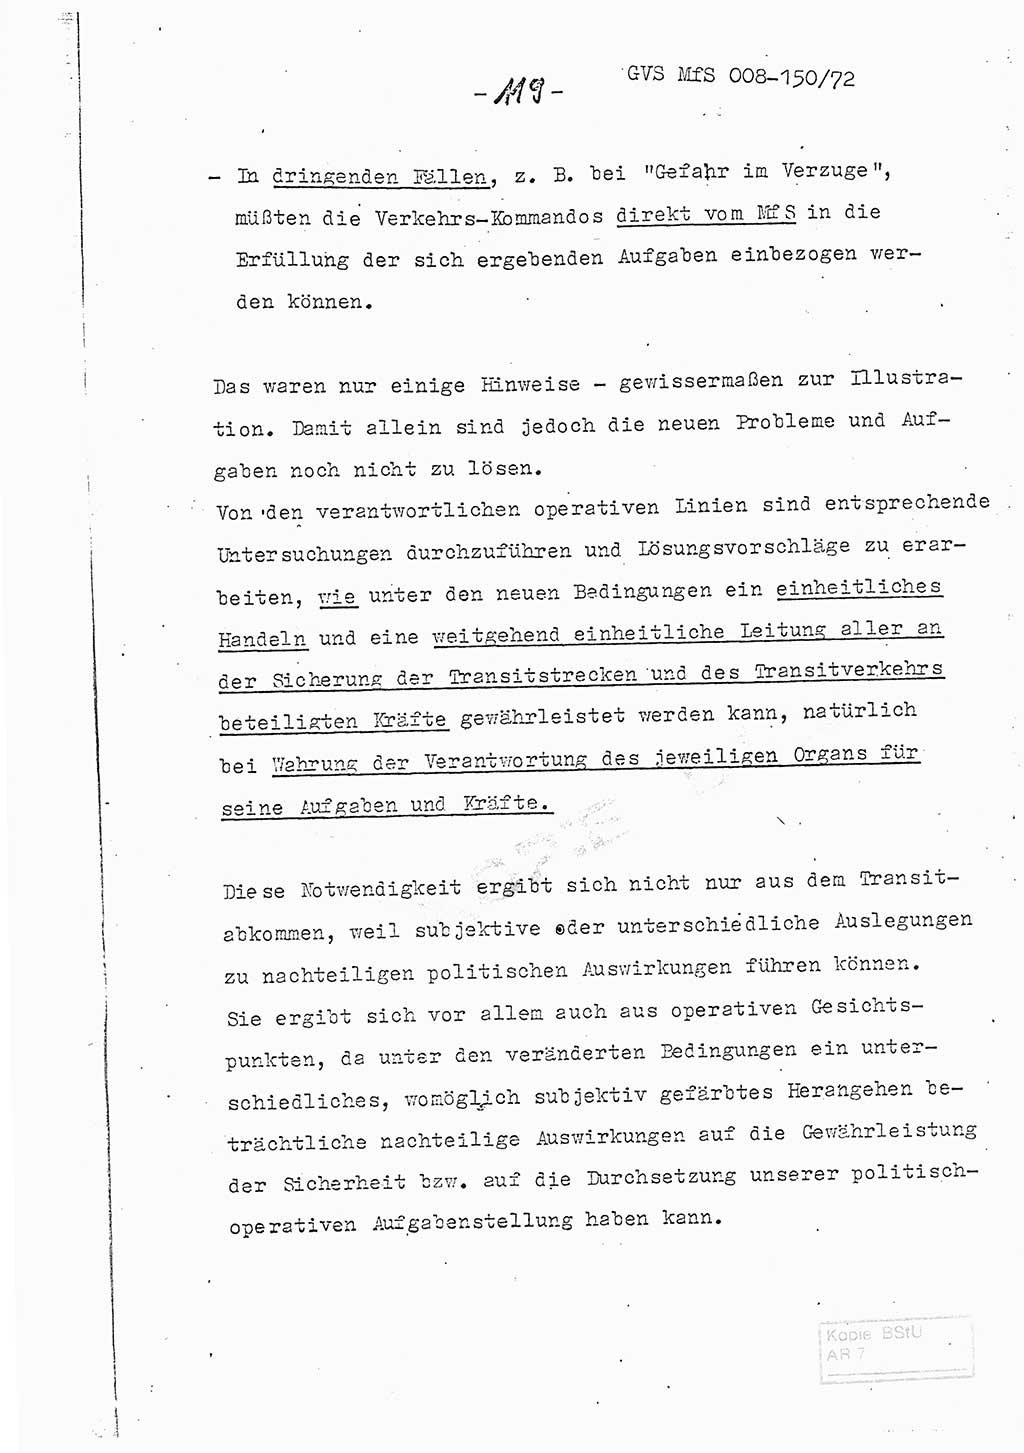 Referat (Entwurf) des Genossen Minister (Generaloberst Erich Mielke) auf der Dienstkonferenz 1972, Ministerium für Staatssicherheit (MfS) [Deutsche Demokratische Republik (DDR)], Der Minister, Geheime Verschlußsache (GVS) 008-150/72, Berlin 25.2.1972, Seite 119 (Ref. Entw. DK MfS DDR Min. GVS 008-150/72 1972, S. 119)